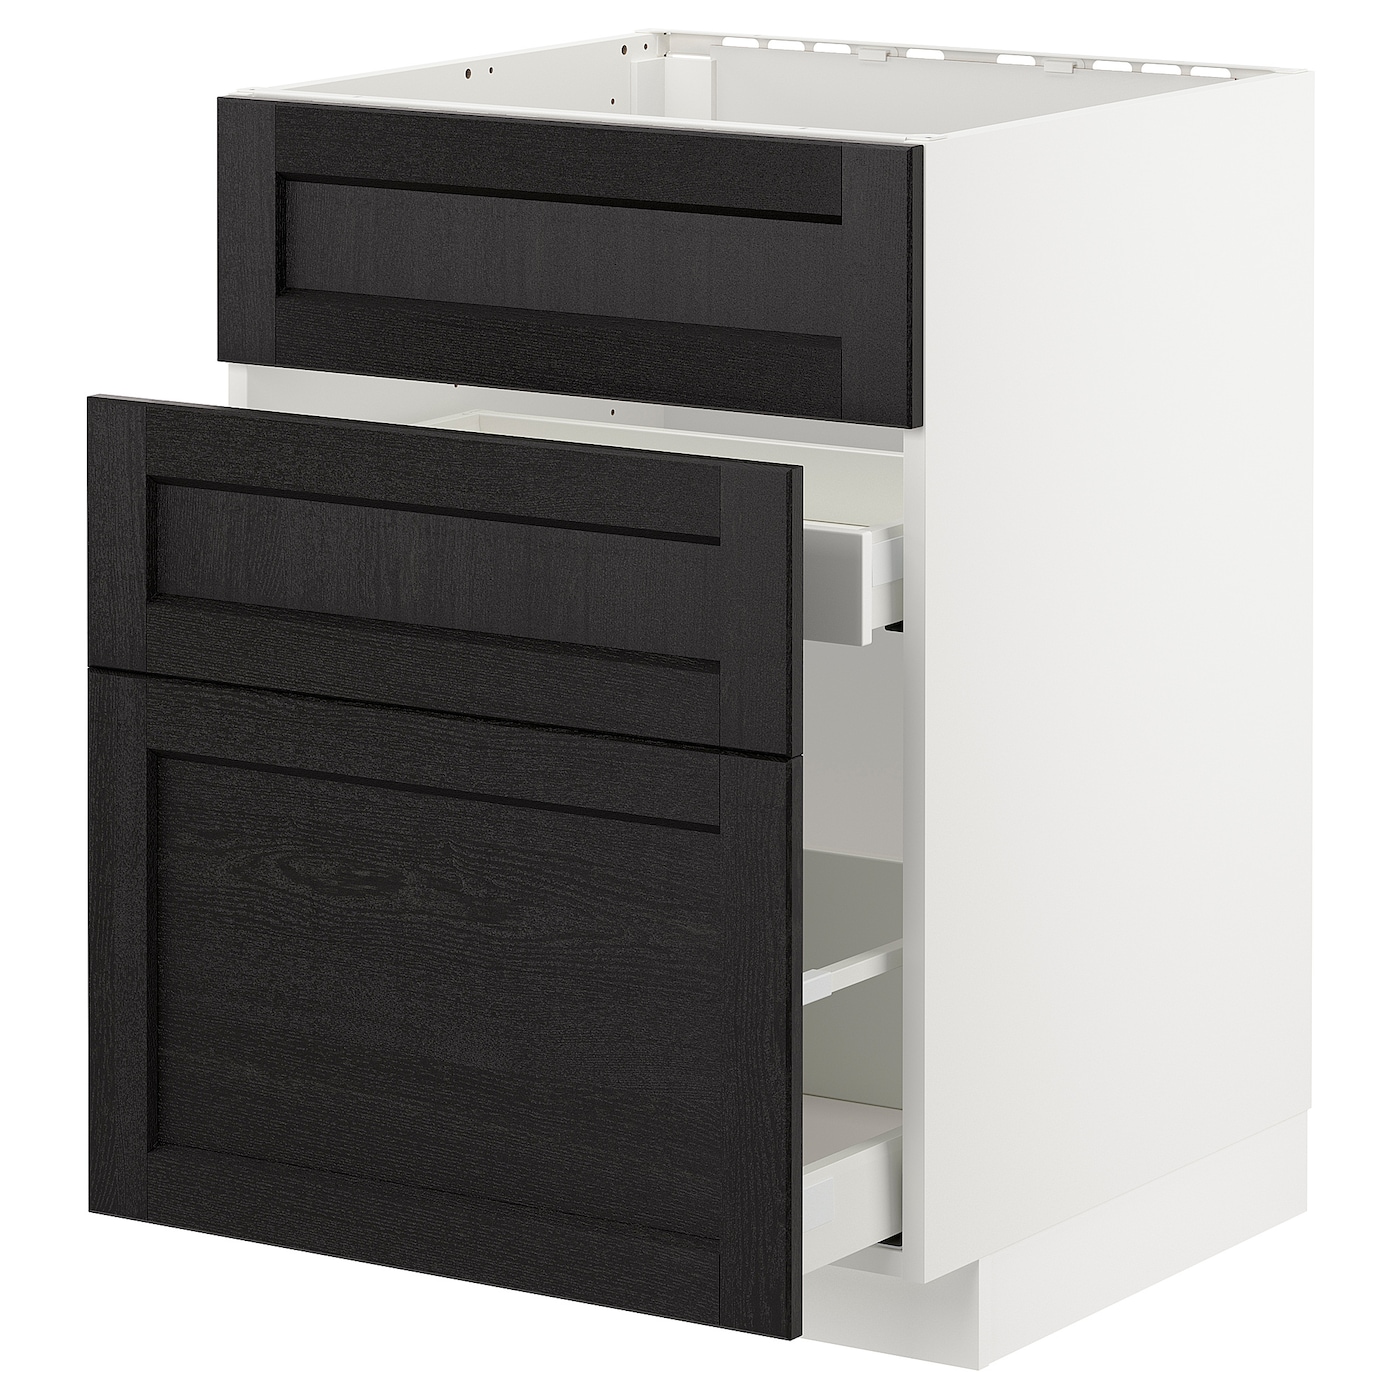 Напольный кухонный шкаф  - IKEA METOD MAXIMERA, 88x62x60см, белый/черный, МЕТОД МАКСИМЕРА ИКЕА